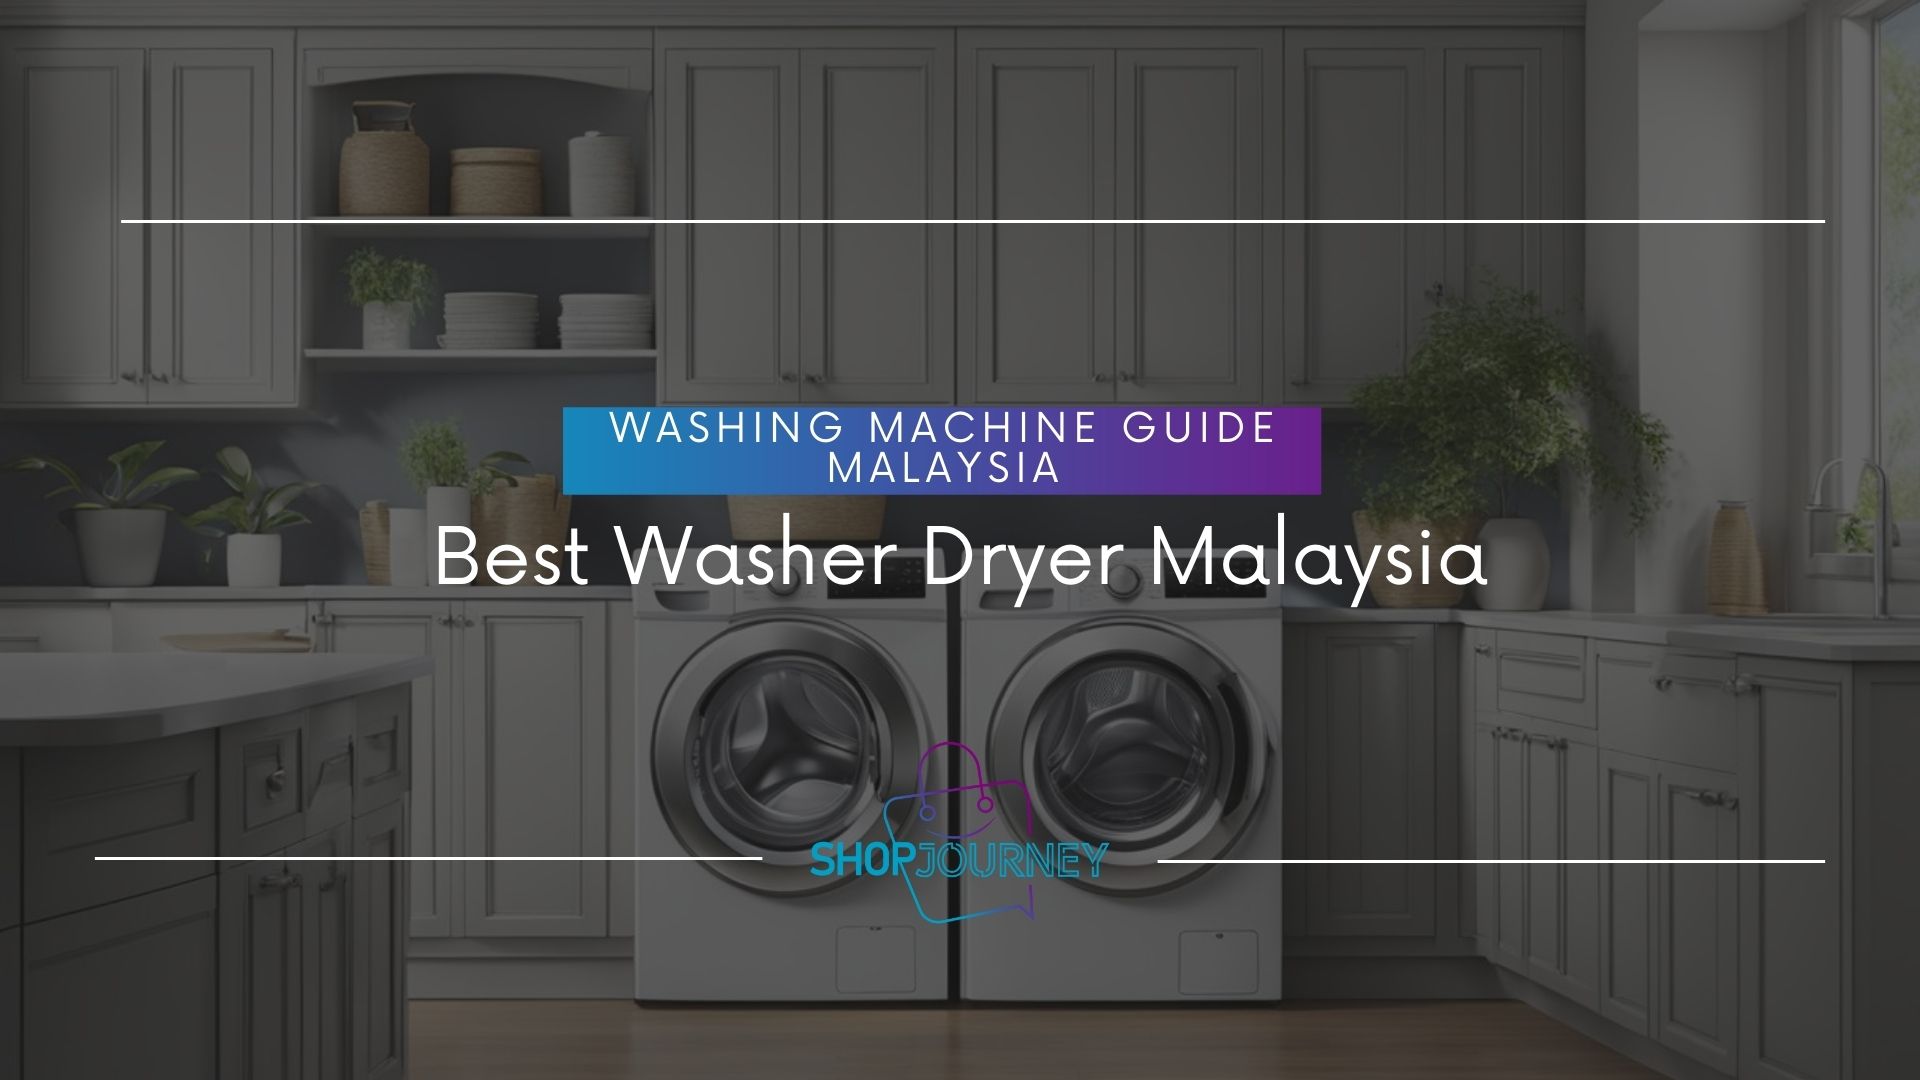 best wash dryer malaysia - ShopJourney